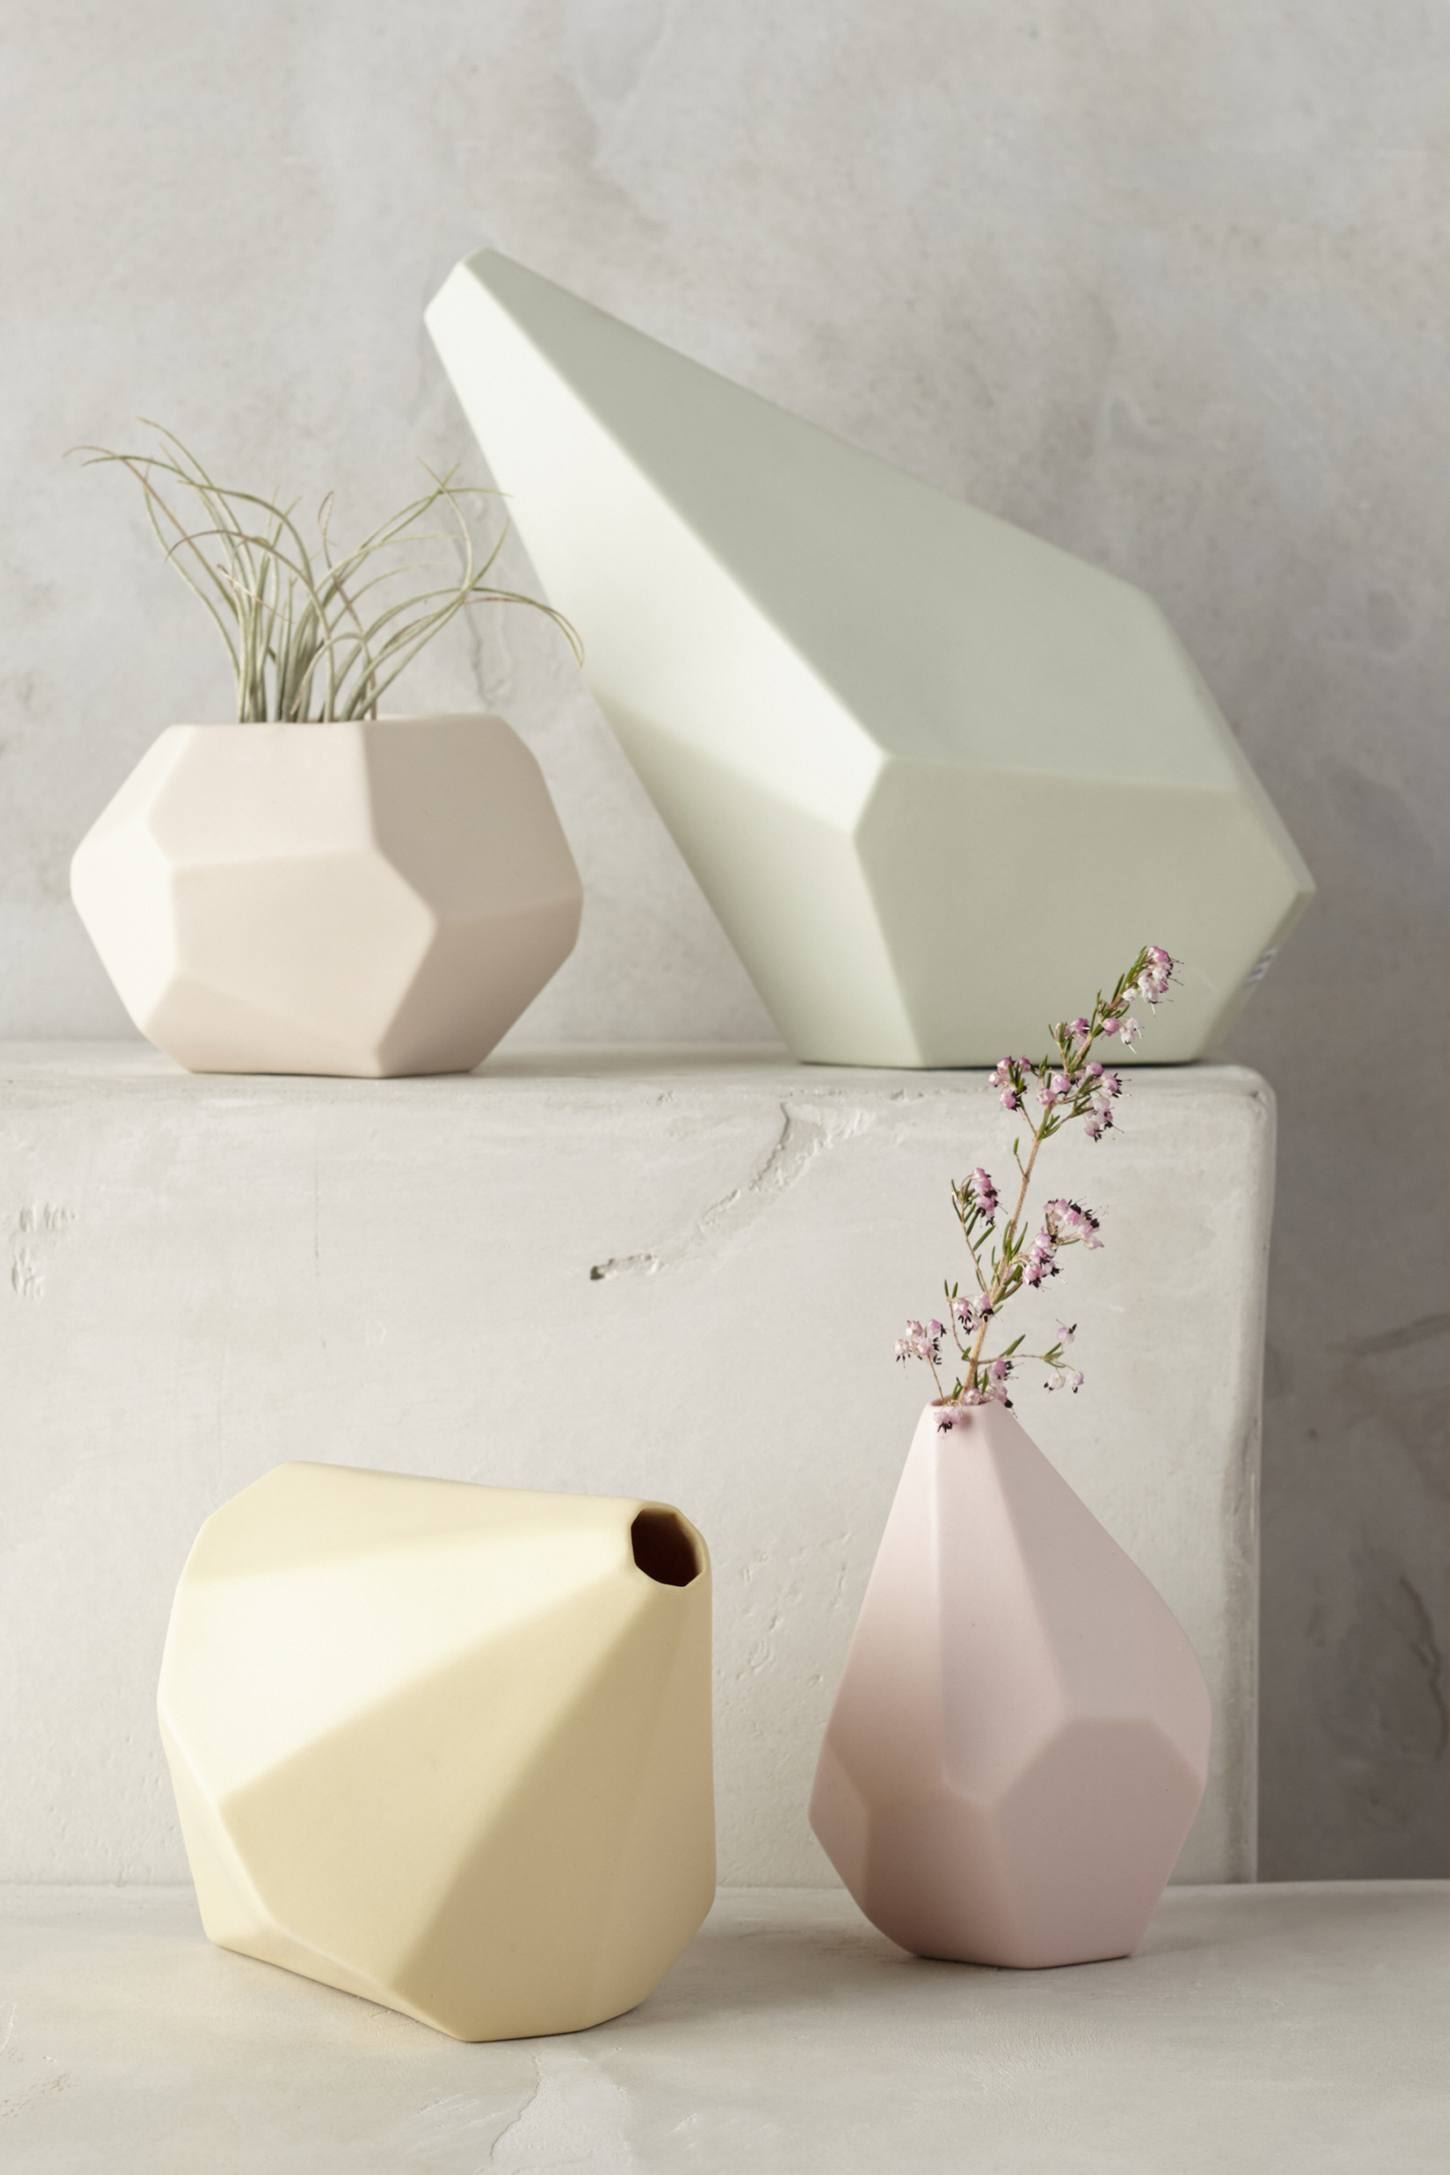 Геометрические вазы неправильной формы нежных оттенков зелёного, розового и жёлтого цветов